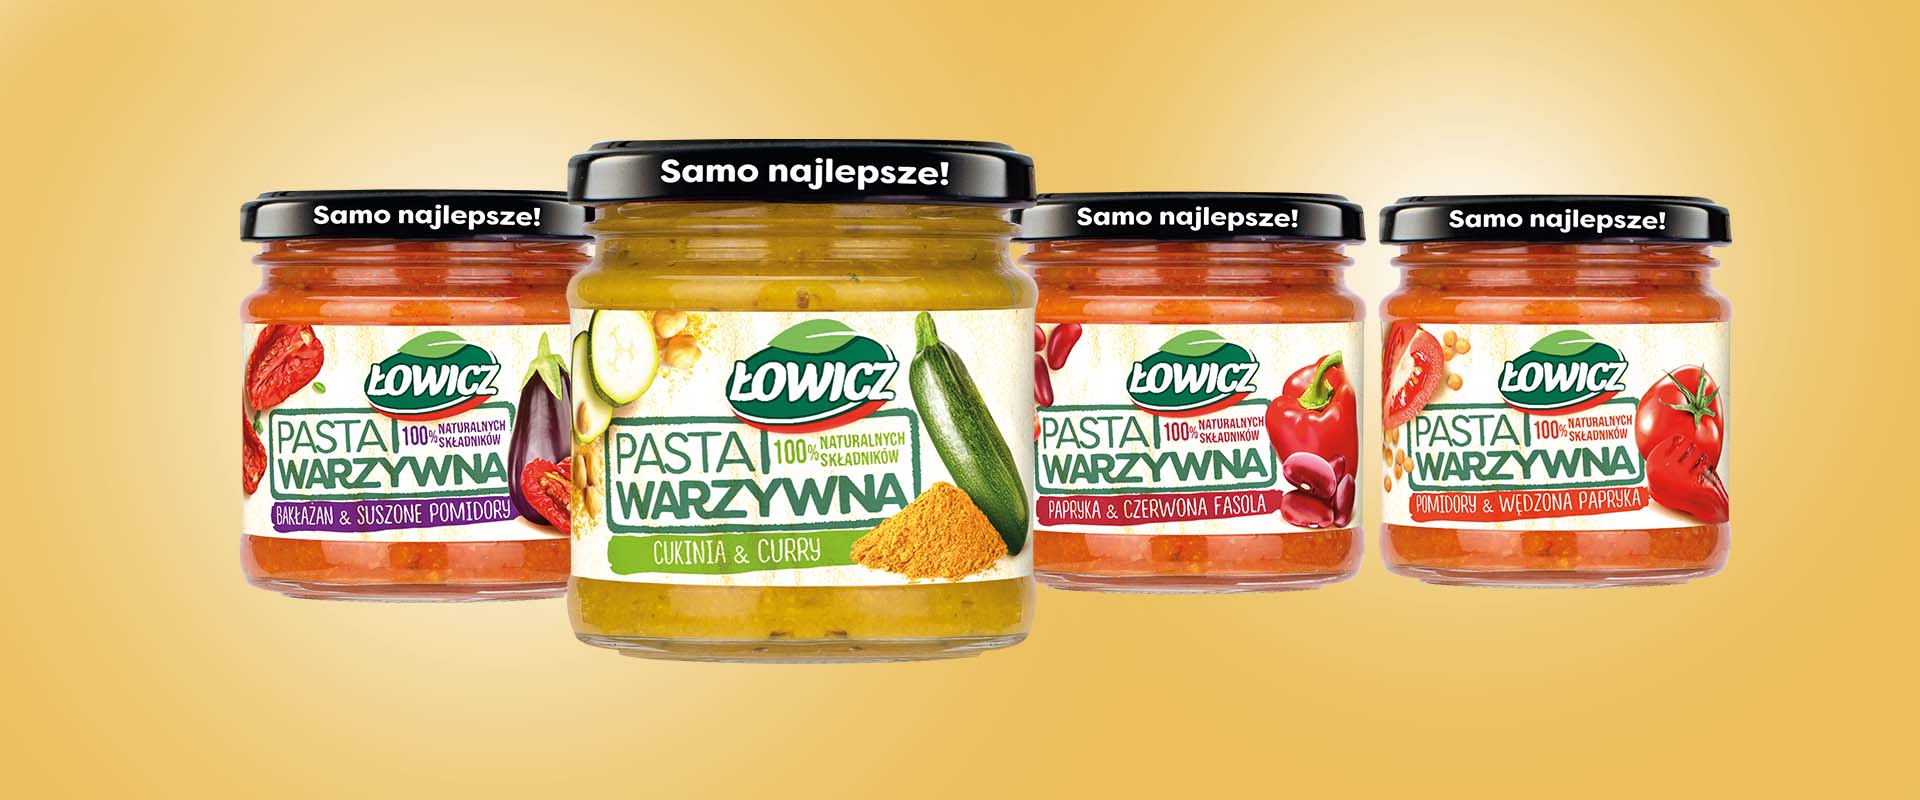 Pasty warzywne Łowicz - Nowosciproduktowe.pl